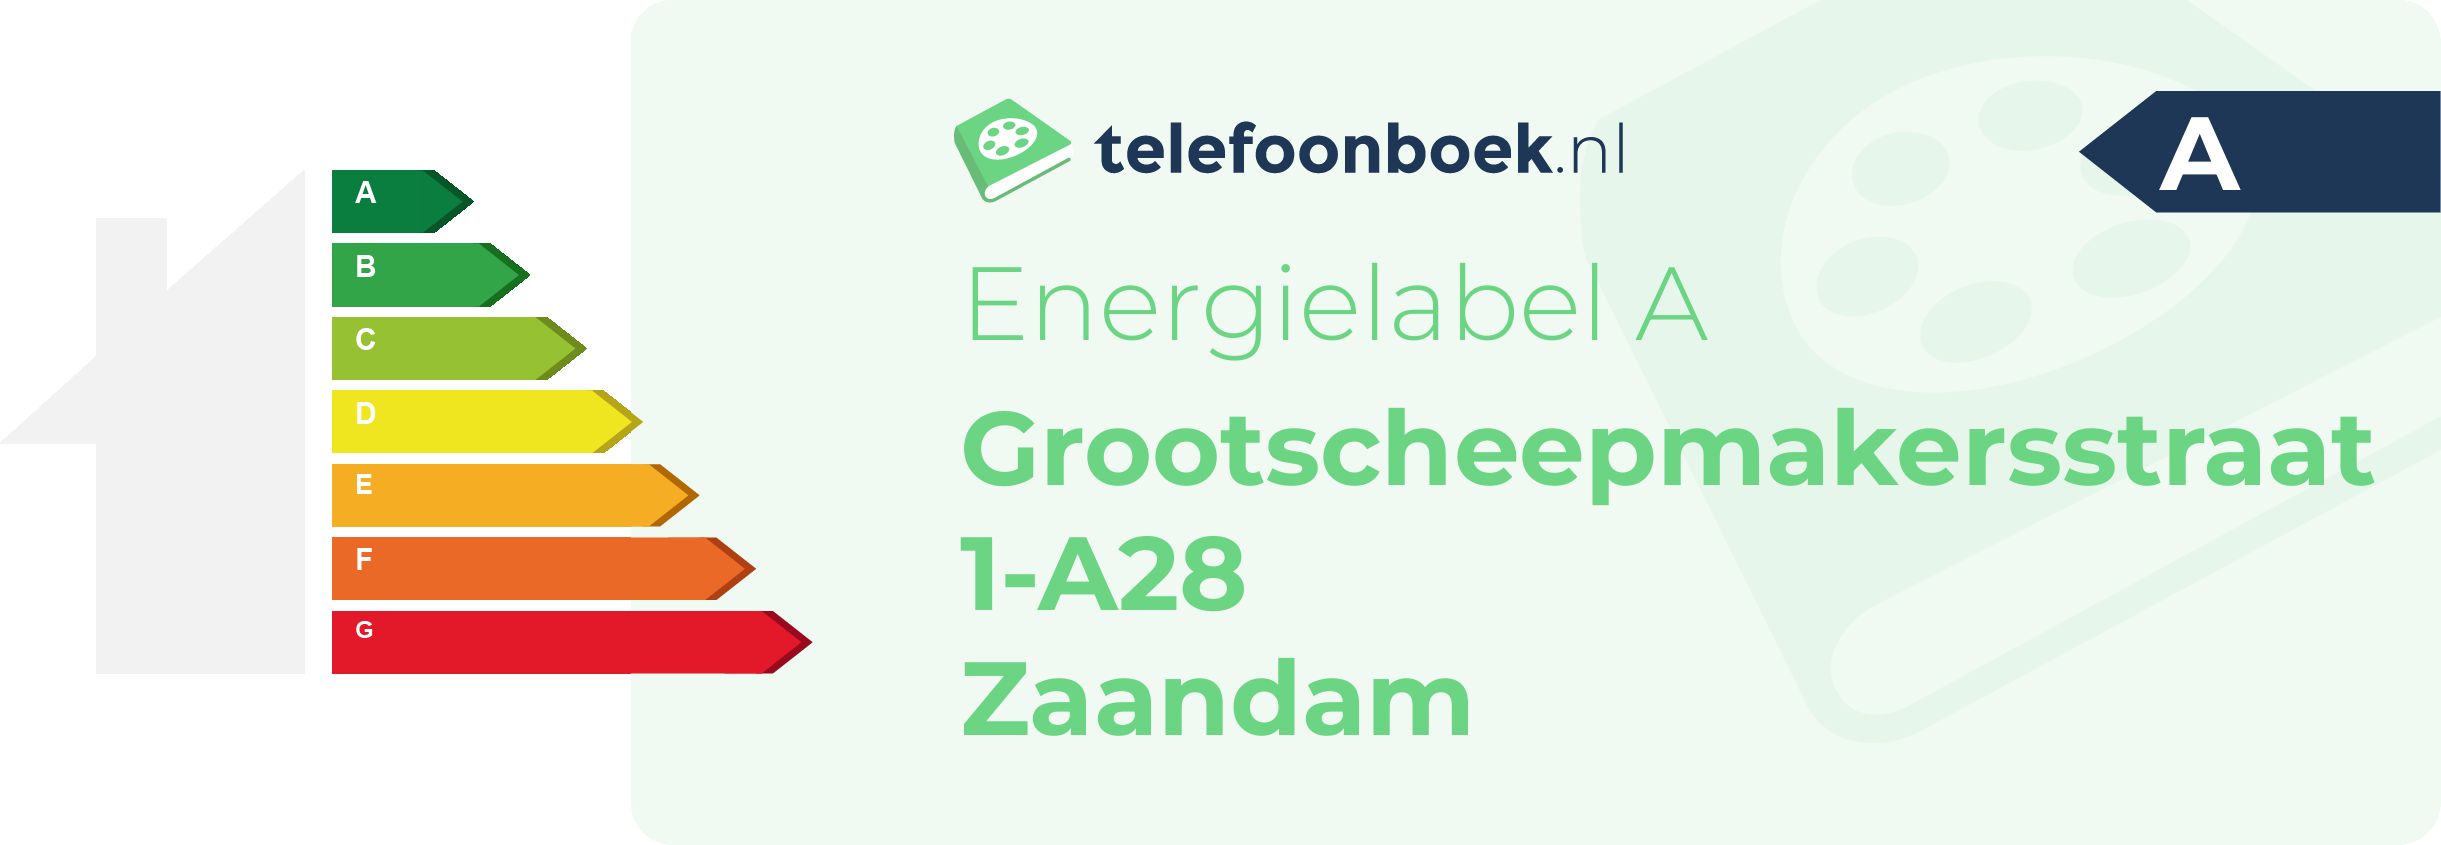 Energielabel Grootscheepmakersstraat 1-A28 Zaandam